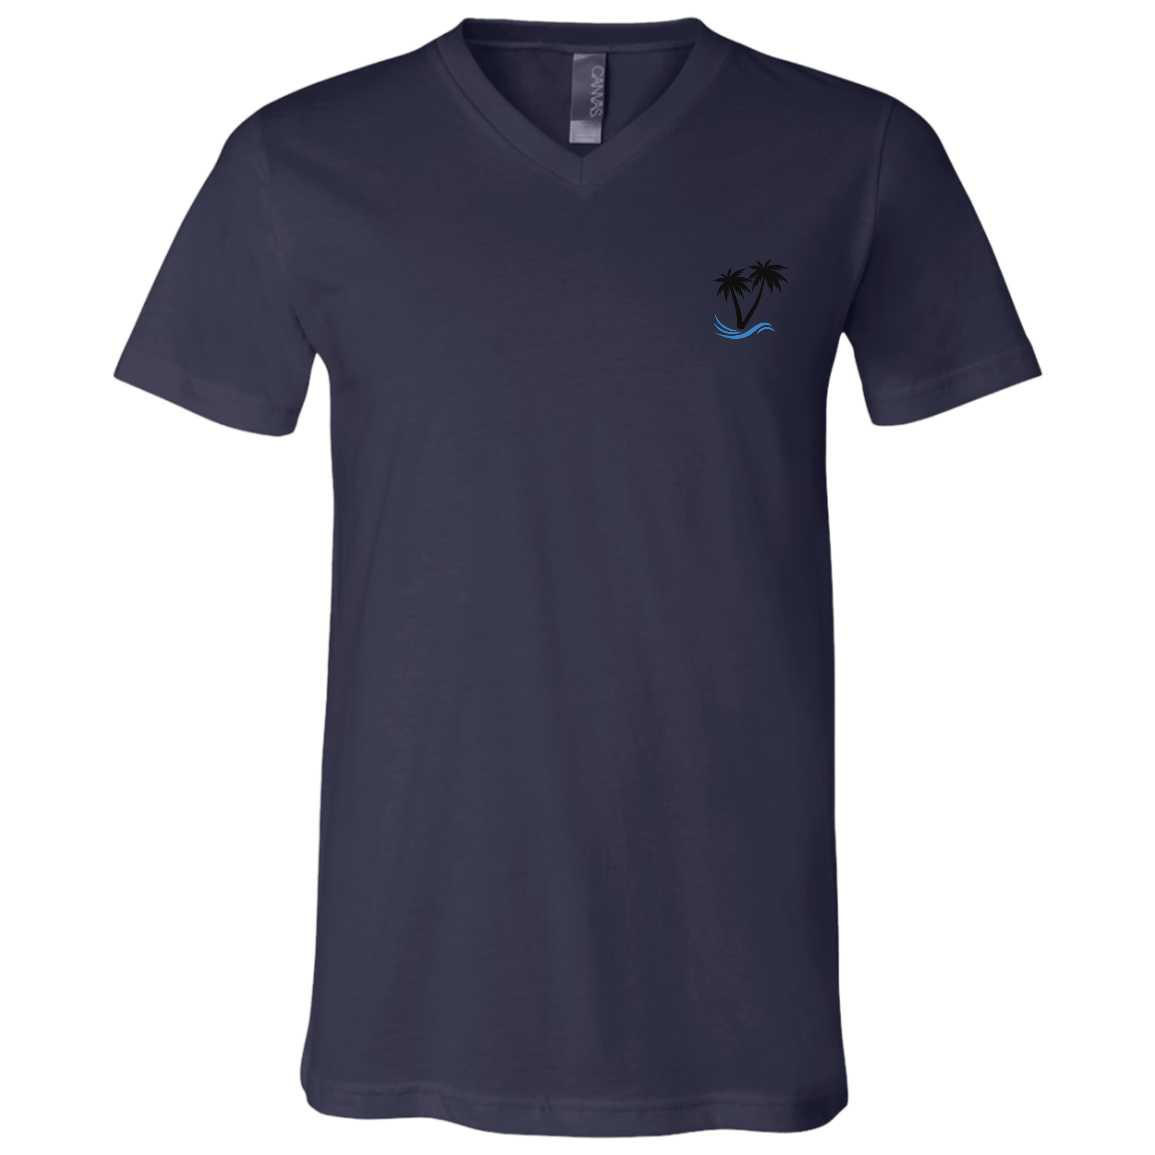 3005 Unisex Jersey SS V-Neck T-Shirt